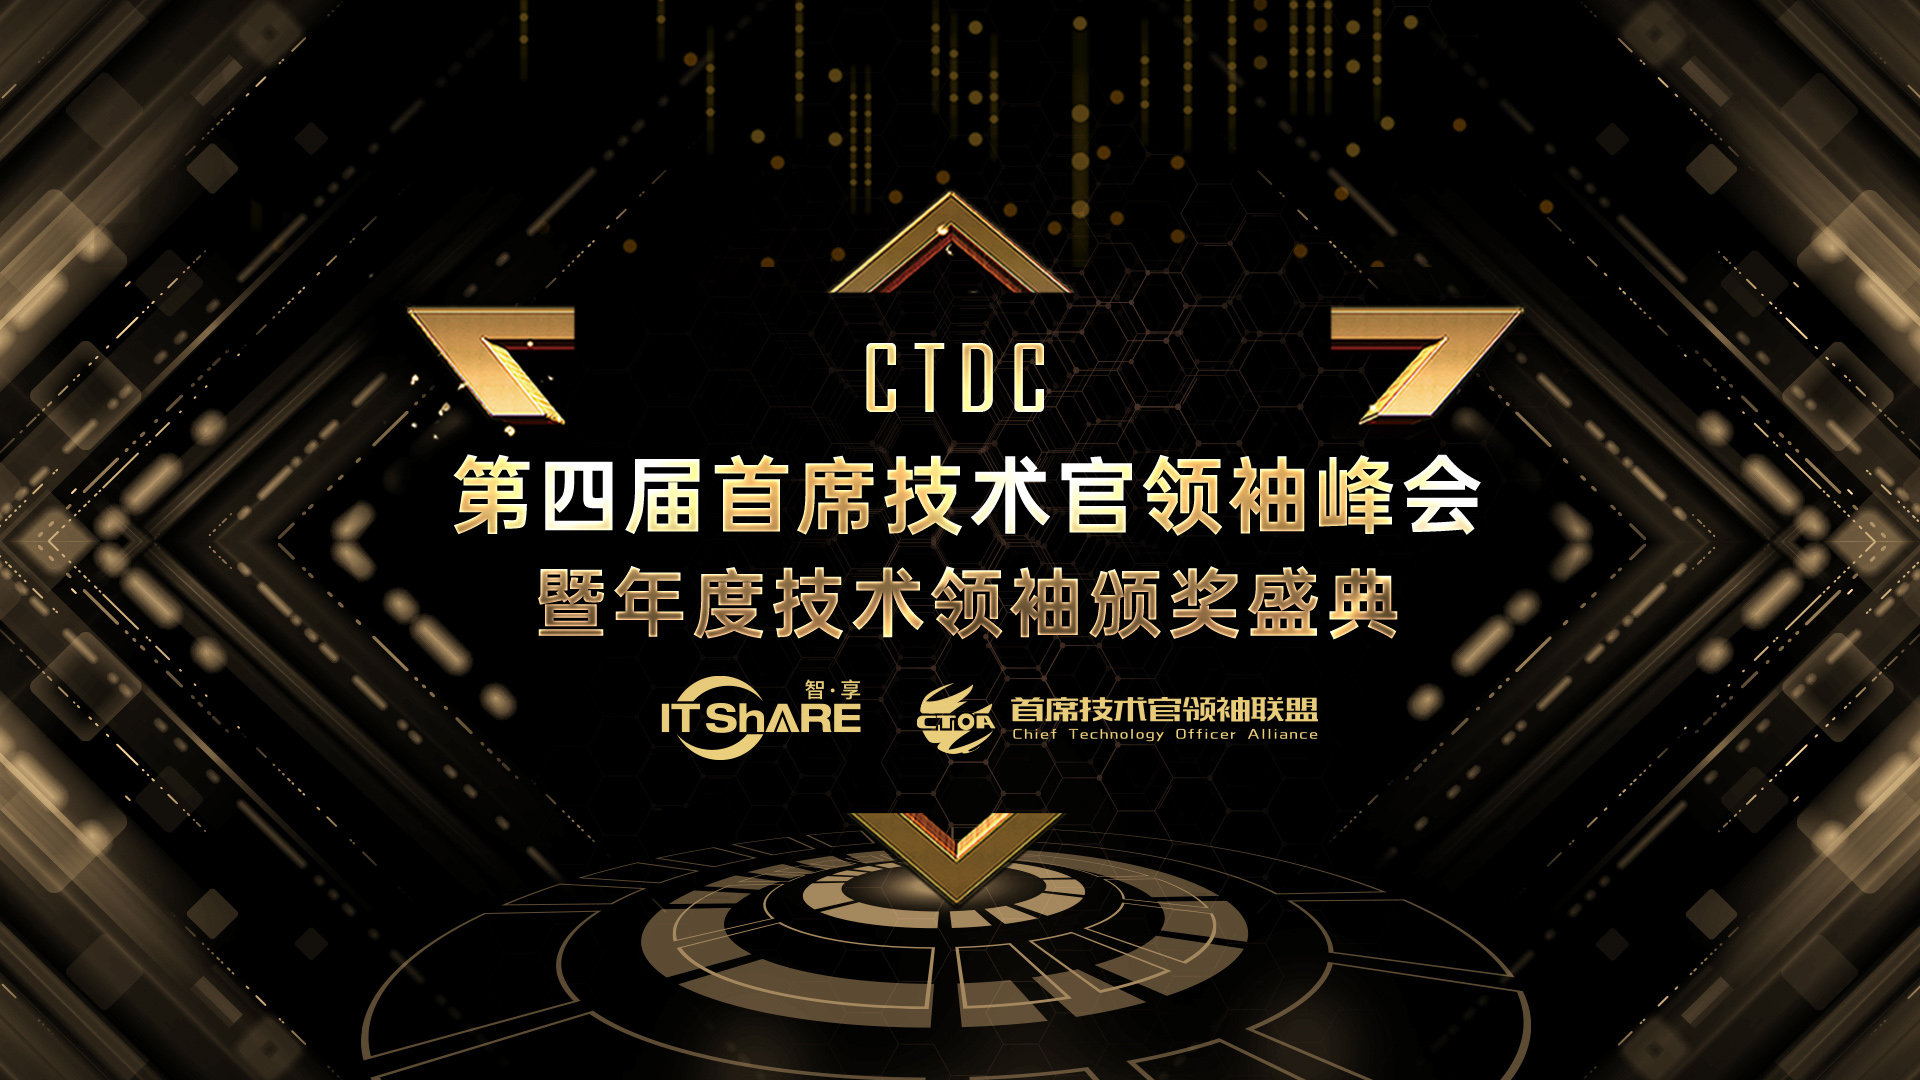 CTDC第四届首席技术官领袖峰会暨年度技术领袖颁奖盛典